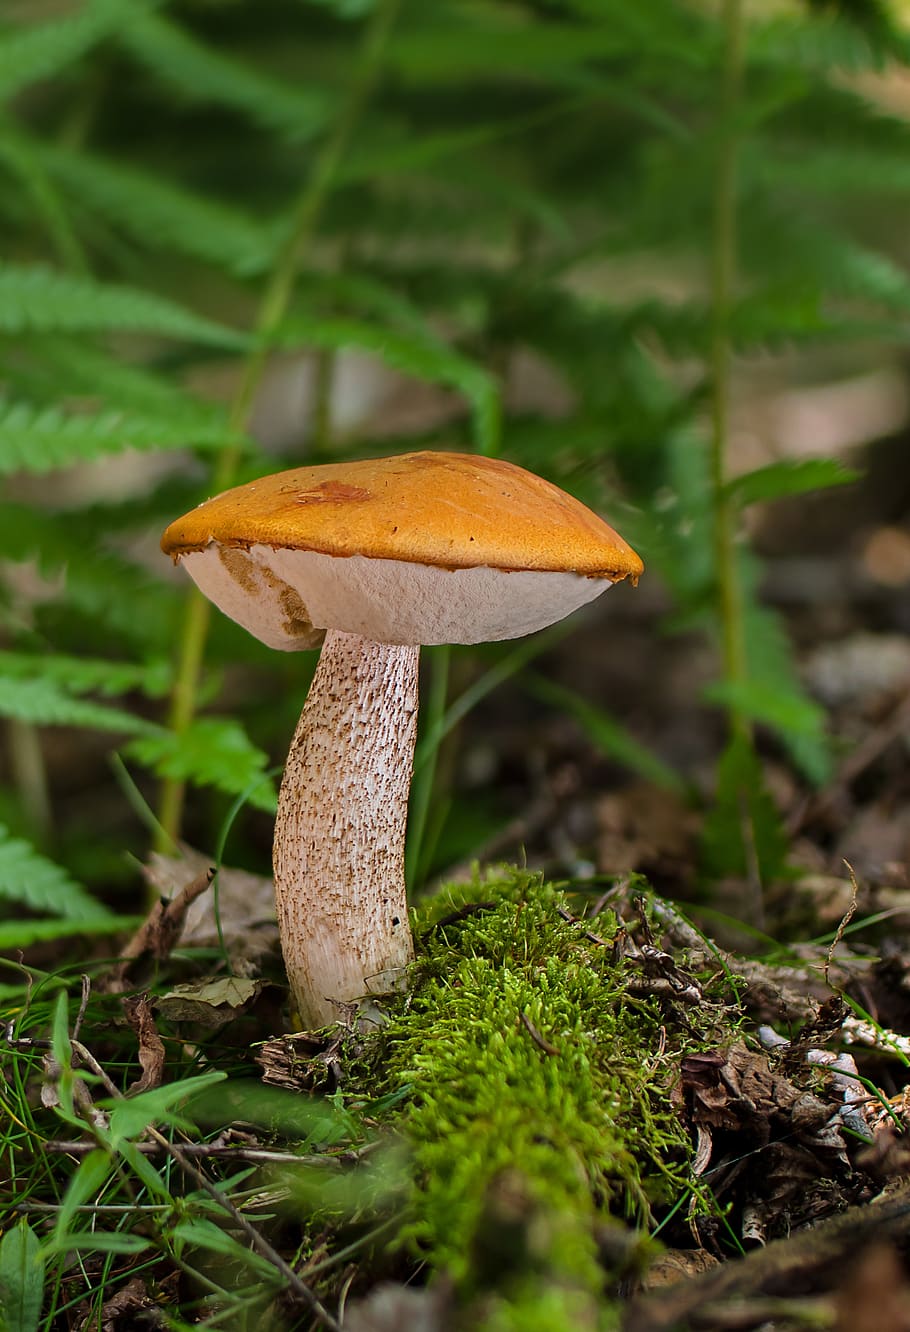 birkenroehrling, rac, mushroom, birch mushroom, autumn mushroom, fungal species, edible, forest mushroom, fungus, vegetable